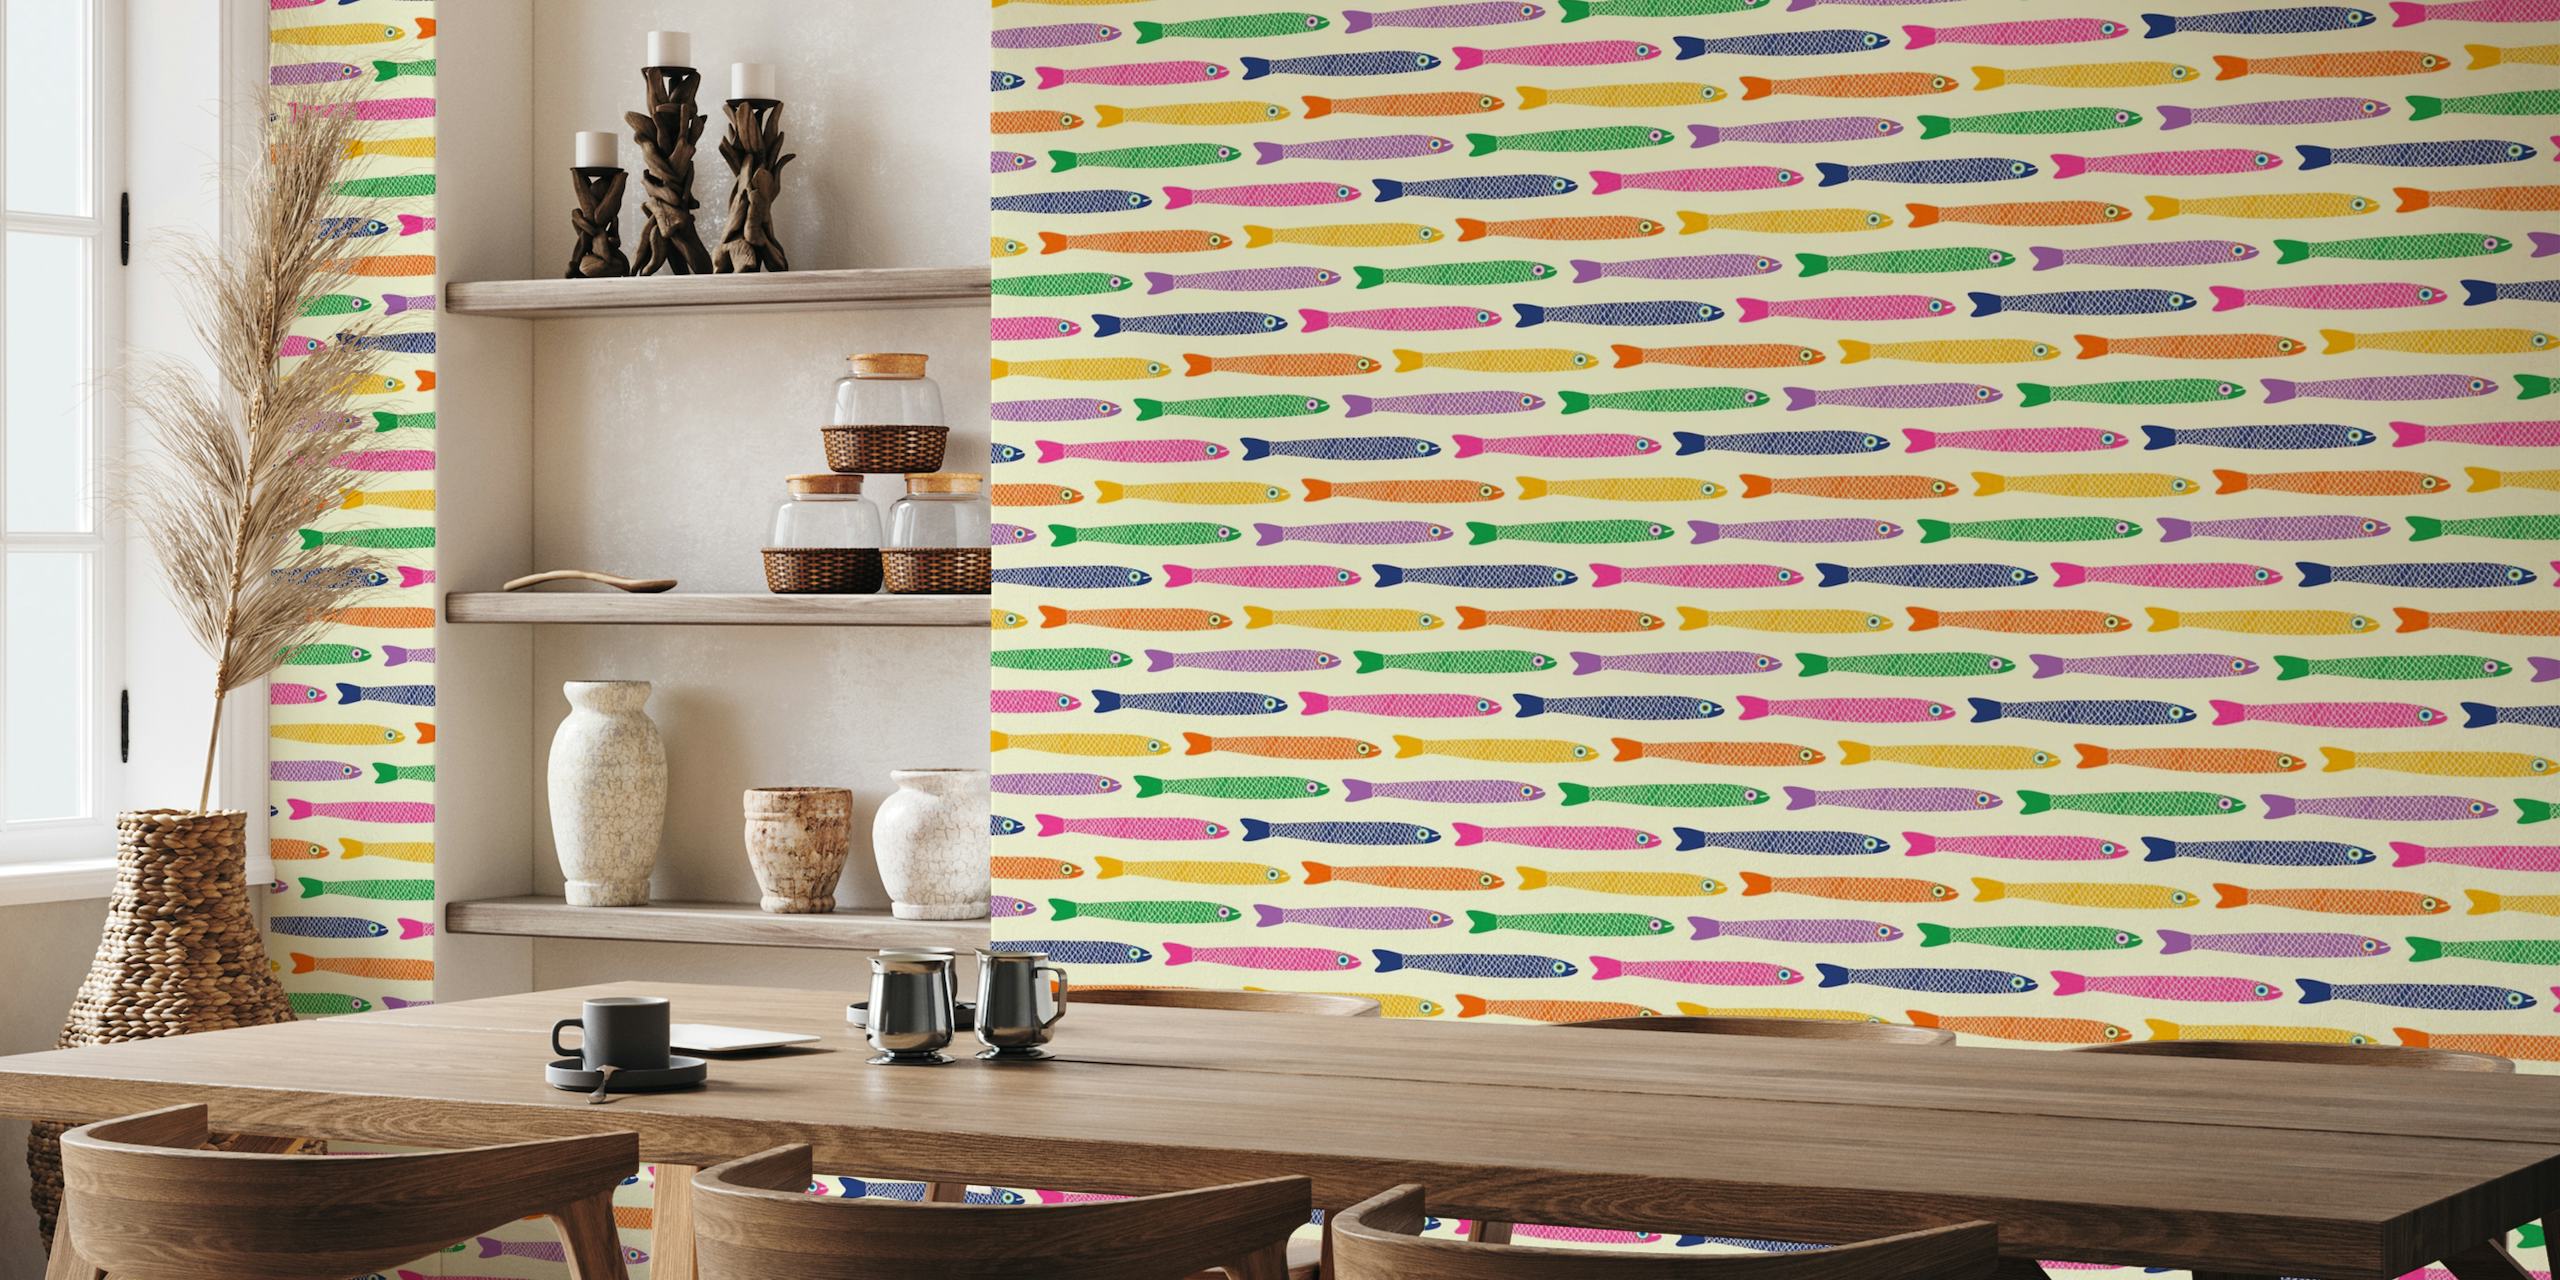 Kleurrijke horizontale strepen van vissen op een crèmekleurige muurschildering als achtergrond